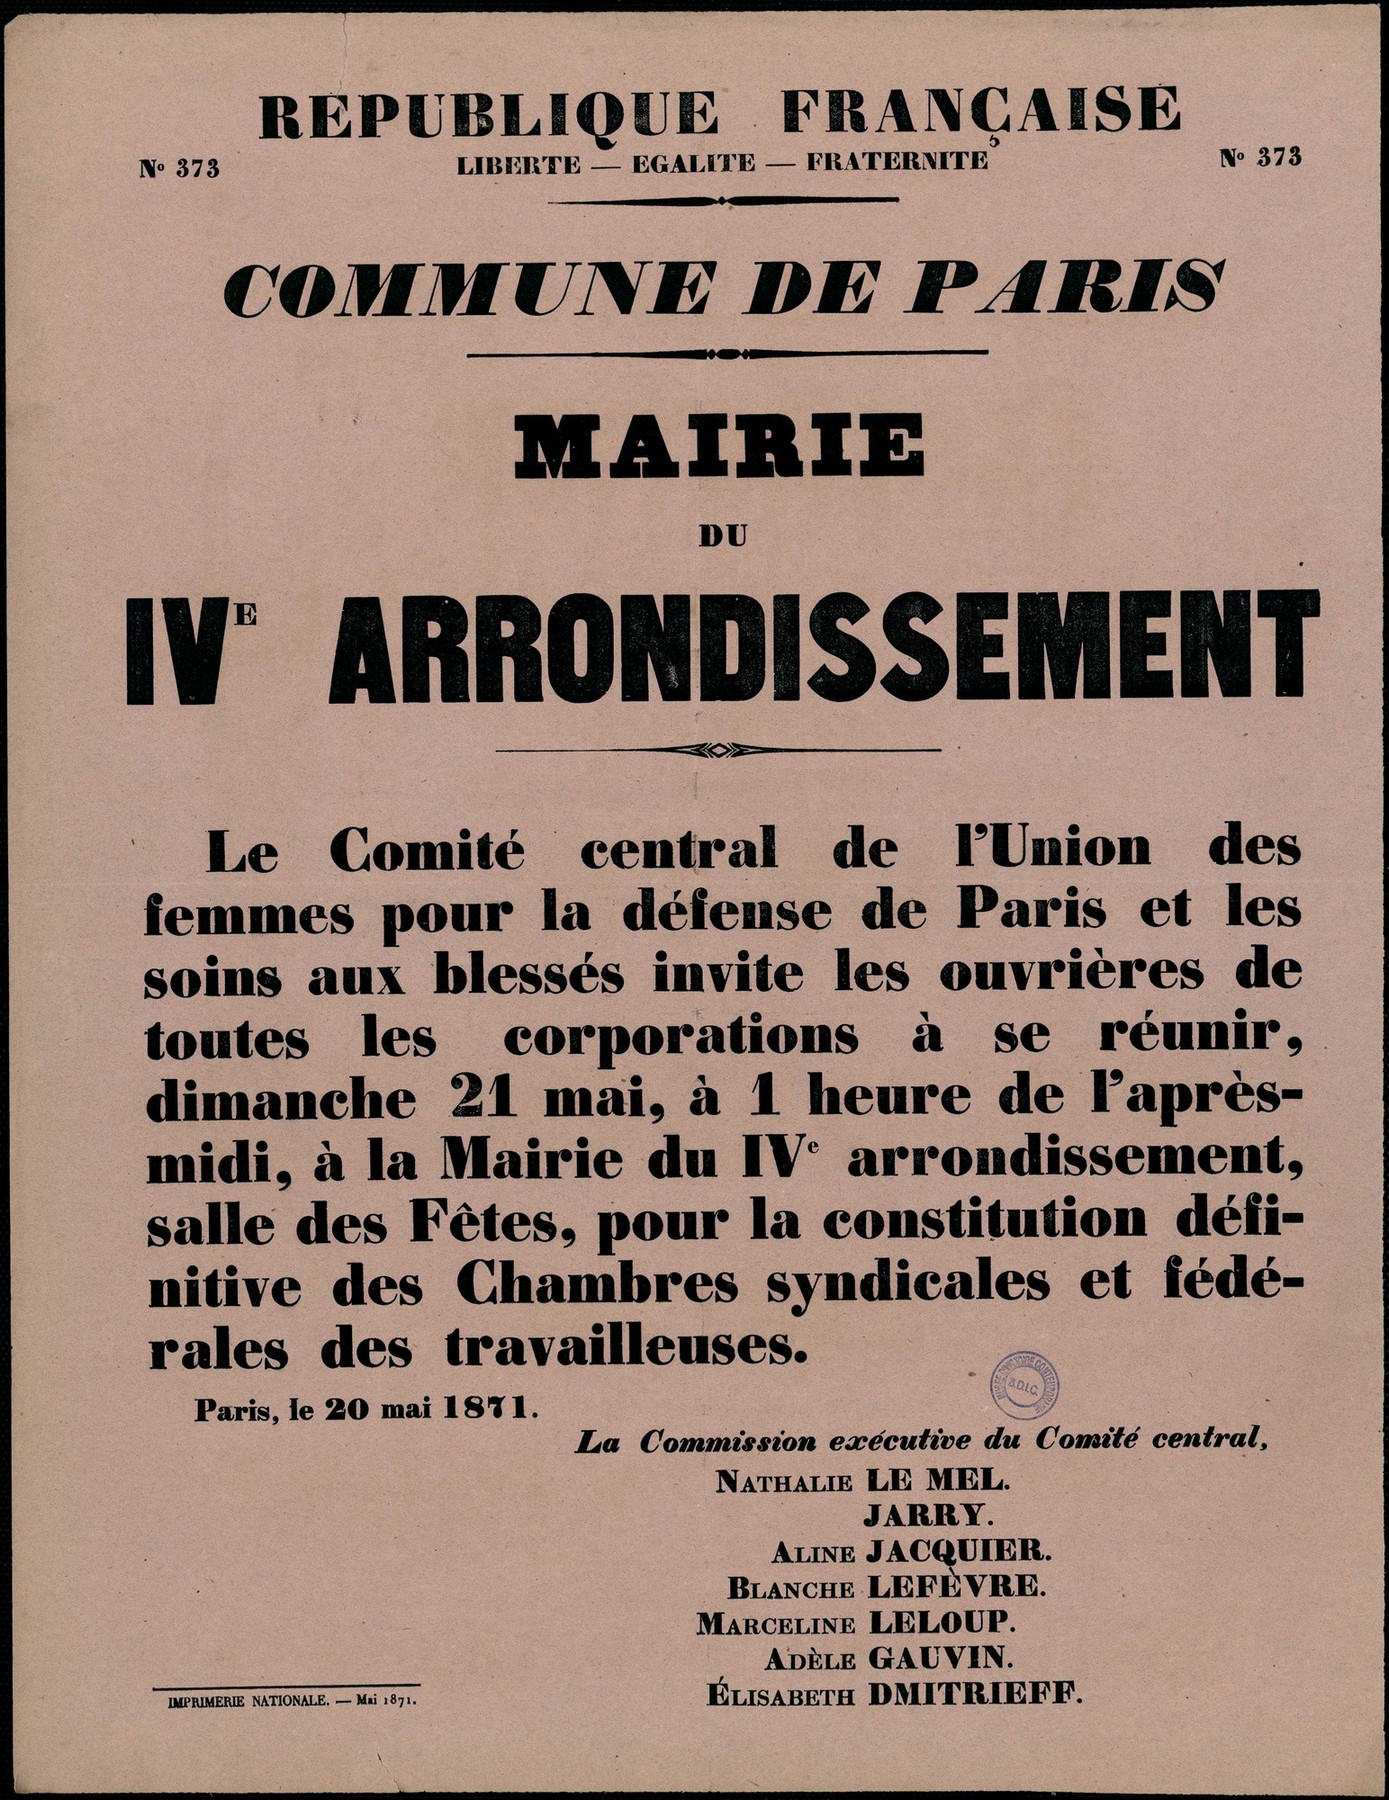 Affiche de la Commune de Paris N°373 du 20 mai 1871 - Appel pour une réunion le 21 mai à Paris 4e (source : La Contemporaine – Nanterre / argonnaute.parisnanterre.fr)